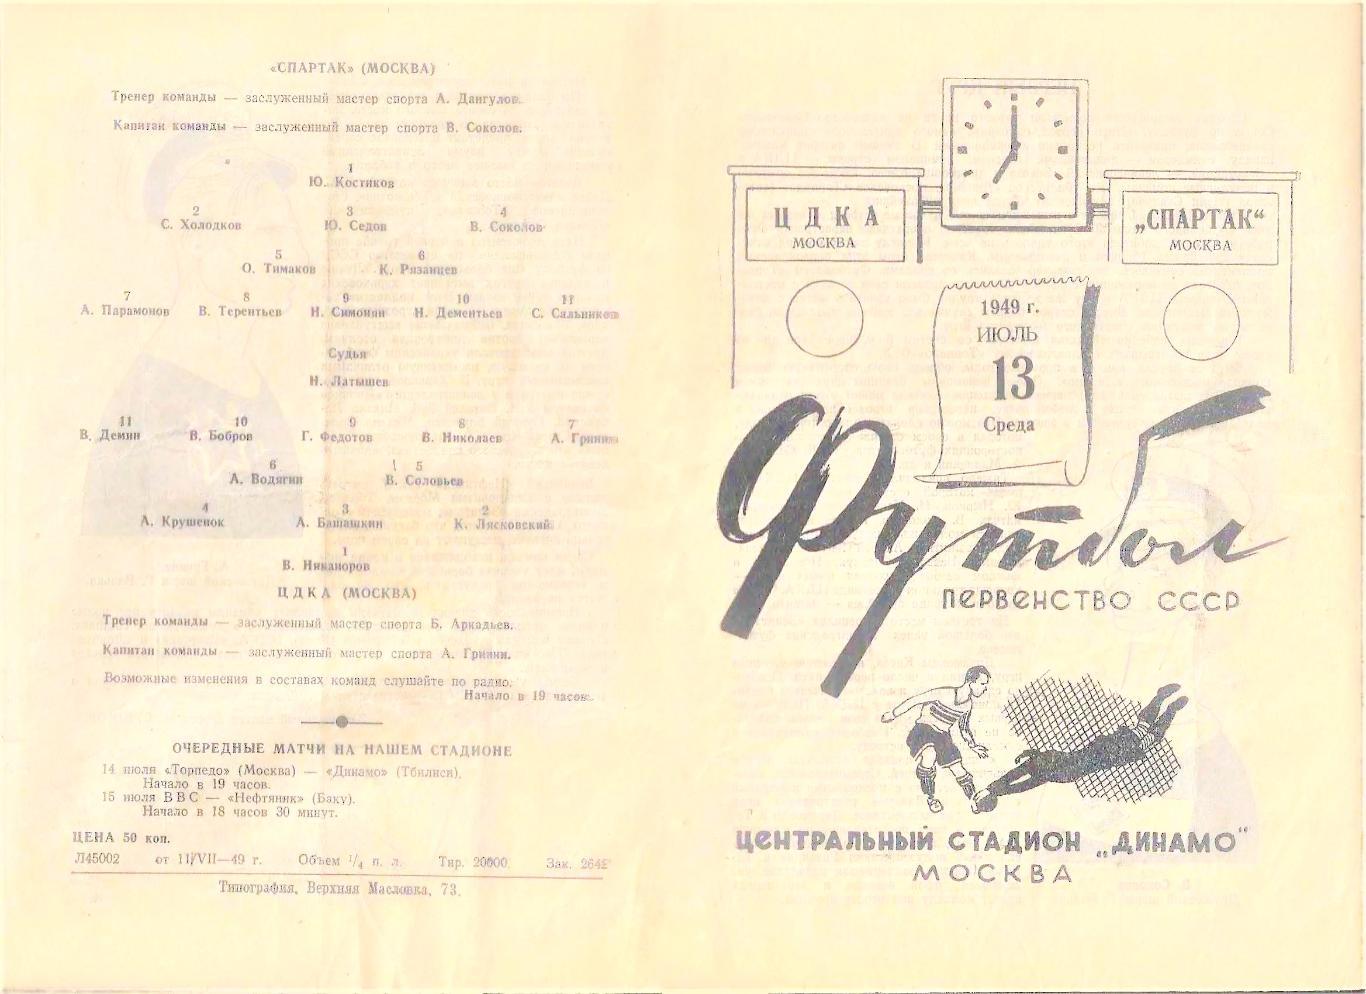 13.07.1949. ЦДКА - Спартак (Москва) - копия